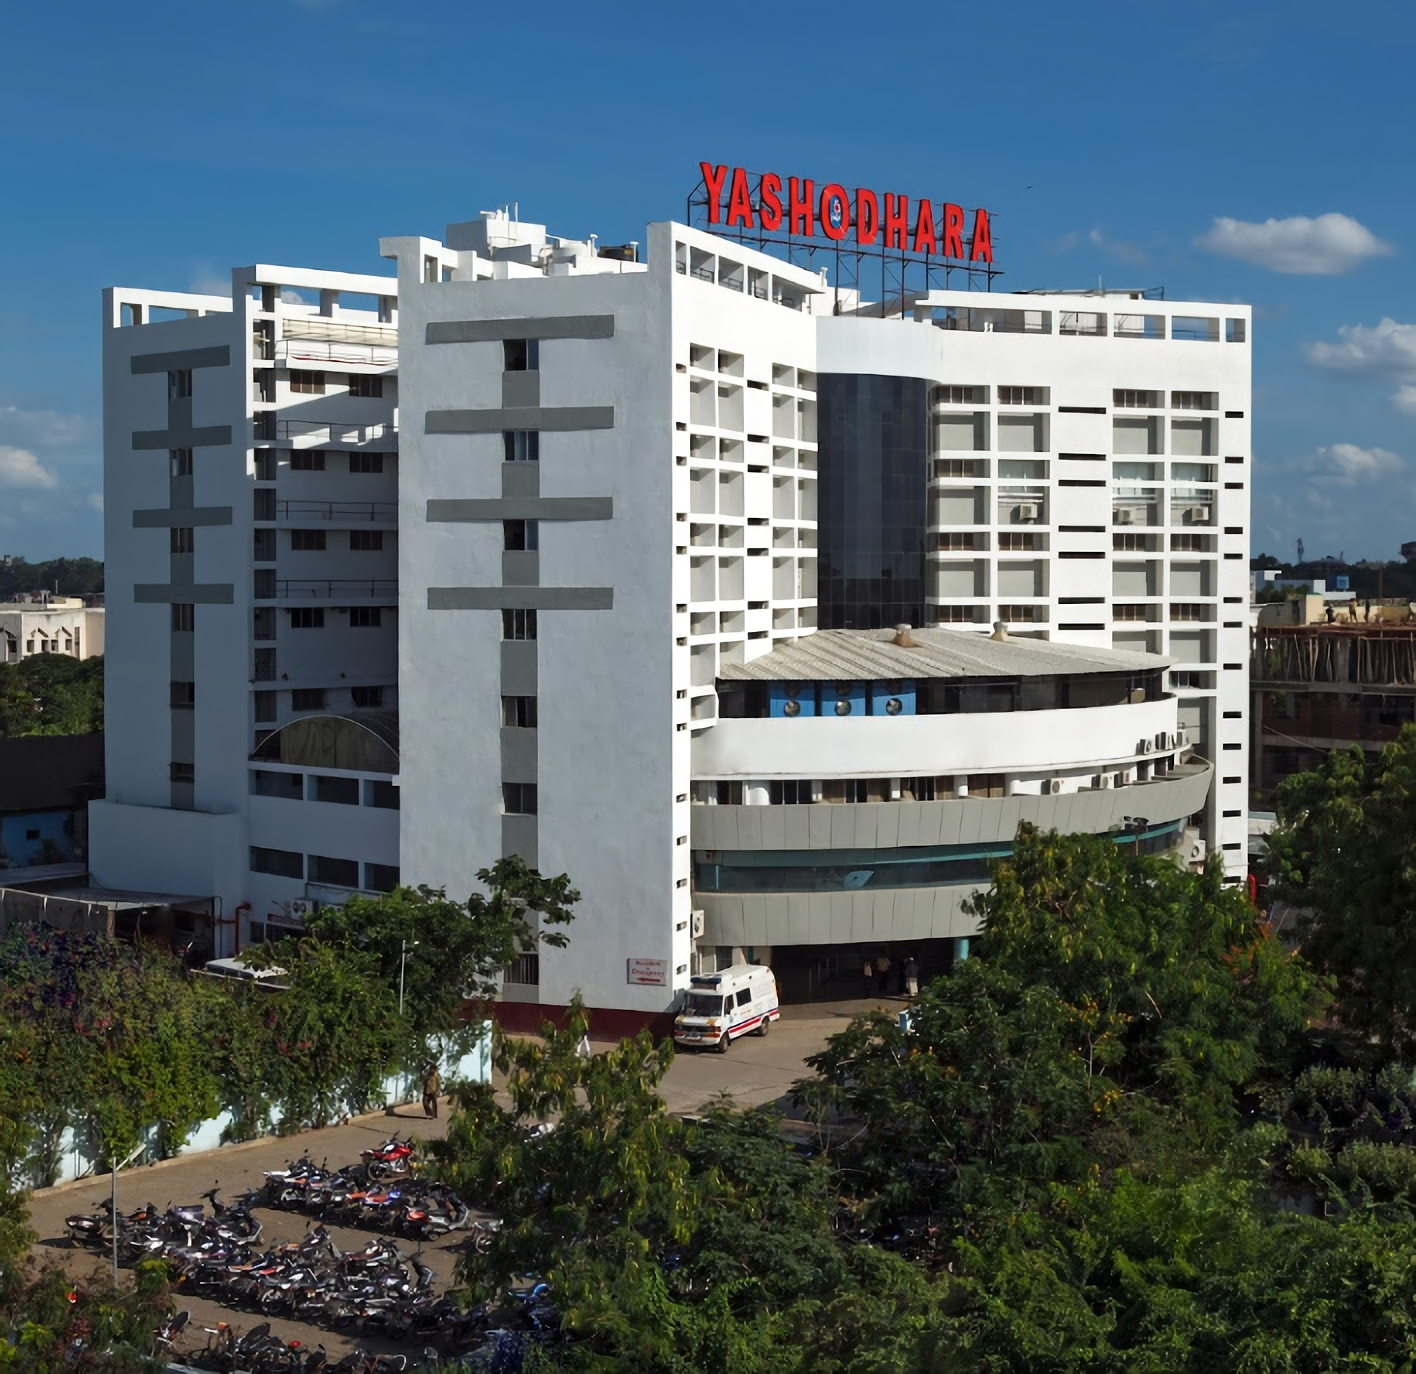 Yashodhara Super Speciality Hospital